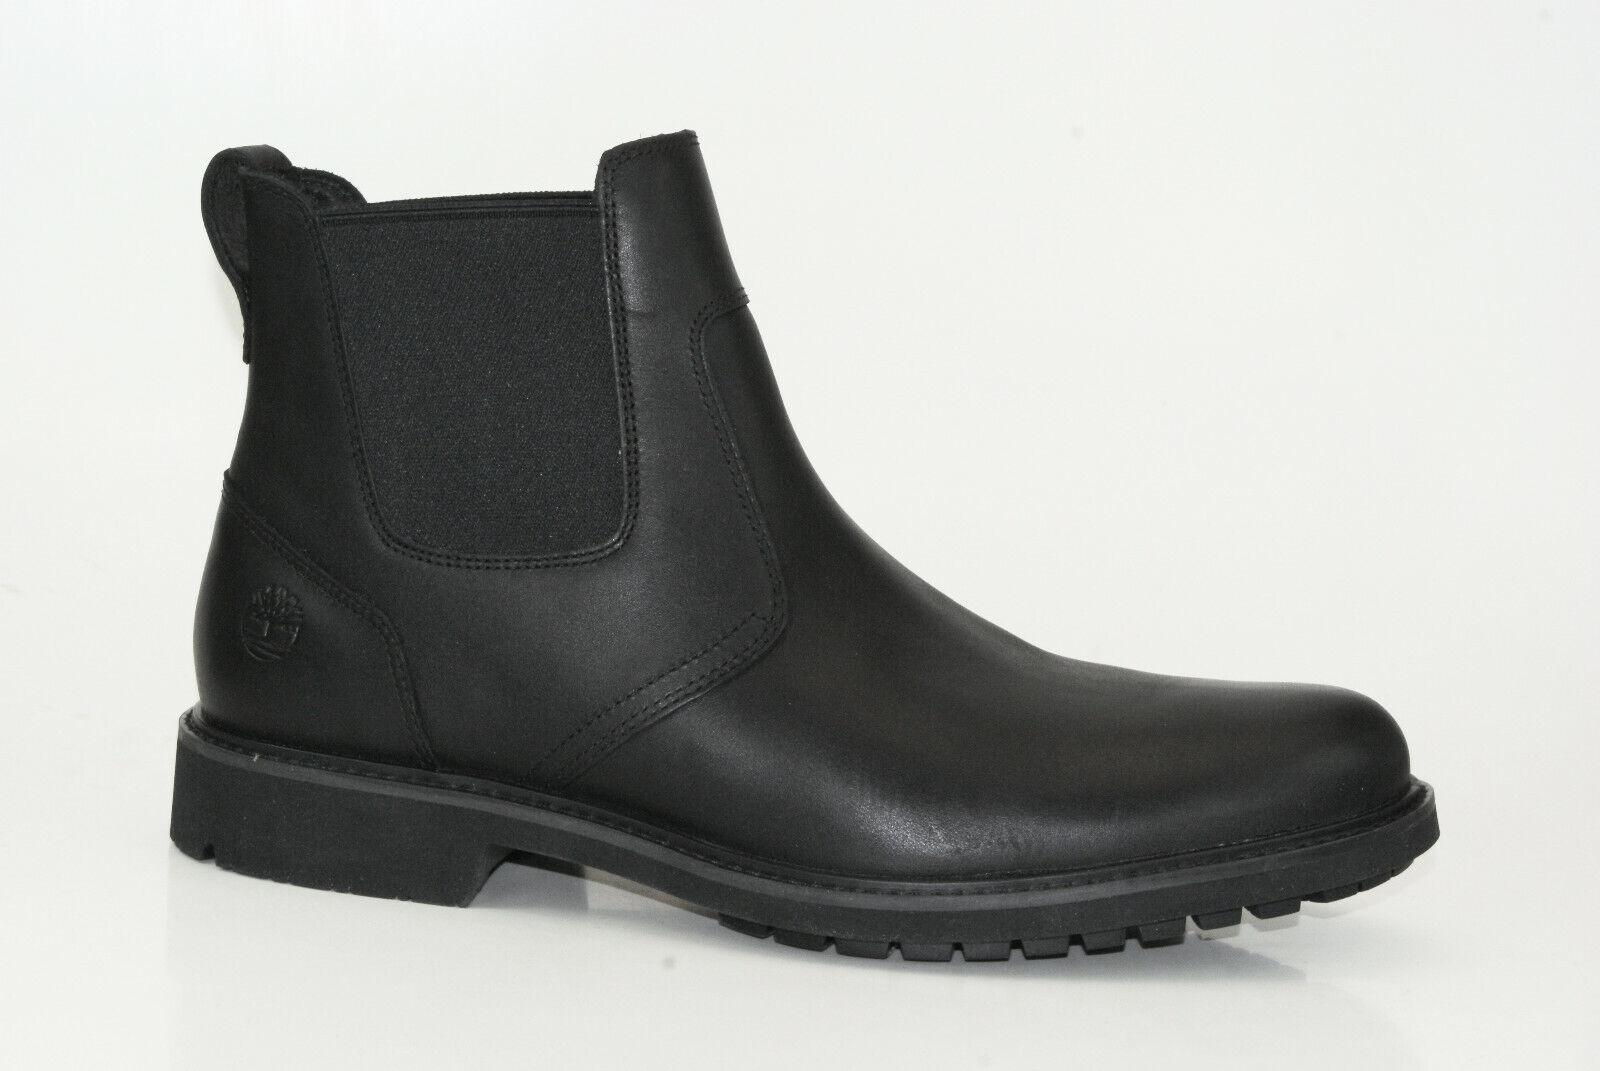 Timberland Stormbucks Chelsea Boots Herren Stiefeletten Stiefel Schuhe 5551R